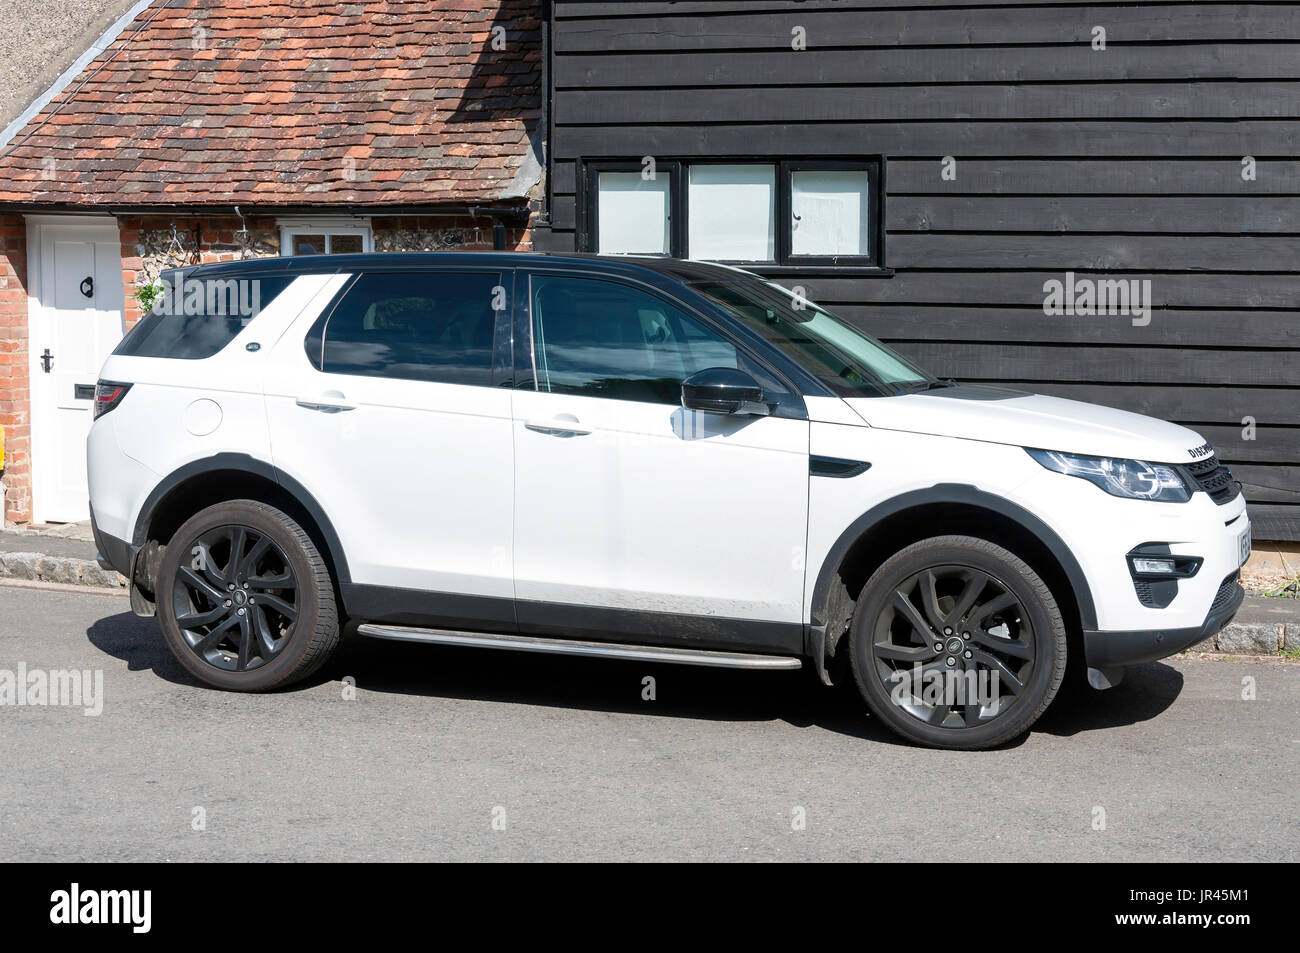 Range Rover Sport Découverte blanc véhicule, Highmore Cottages, crassier, Buckinghamshire, Angleterre, Royaume-Uni Banque D'Images